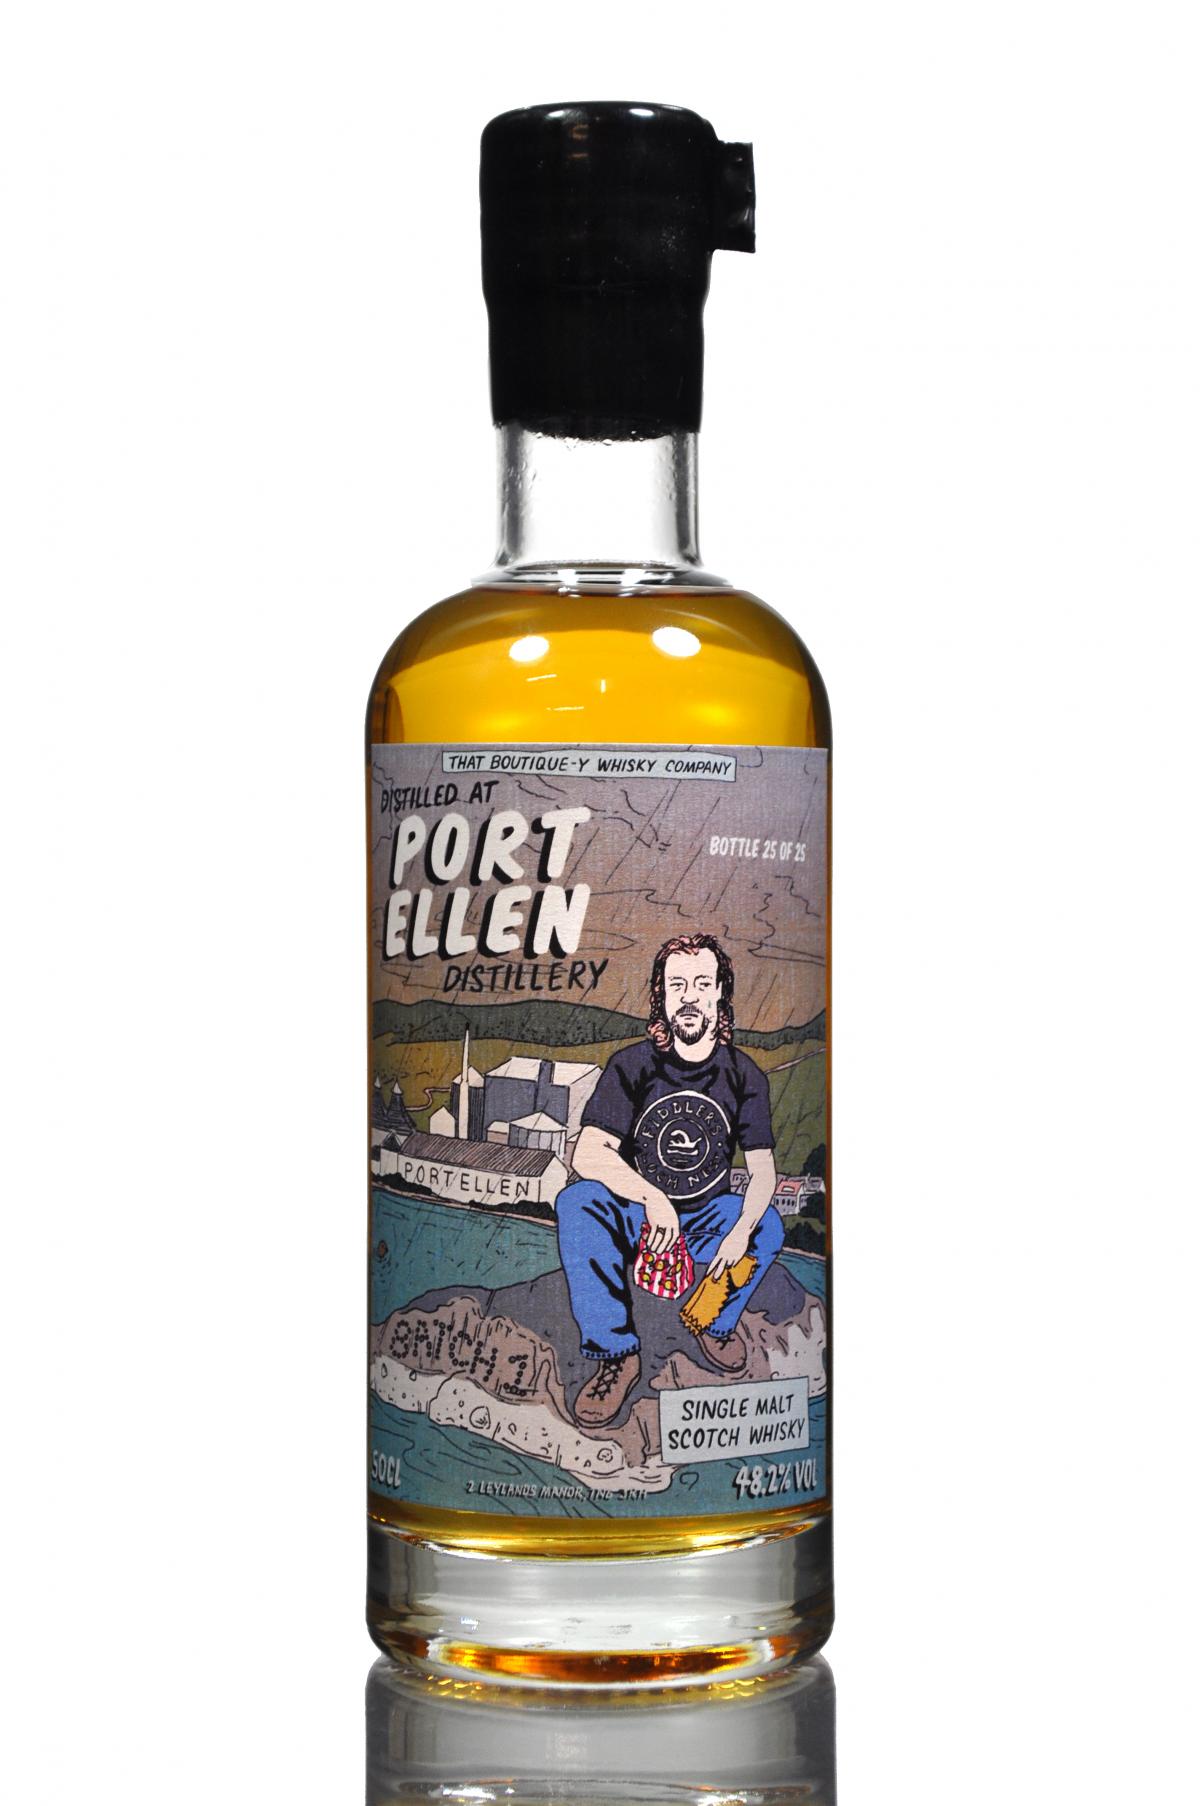 Port Ellen Batch 1 - That Boutique-y Whisky Company - Bottle 25 of 25